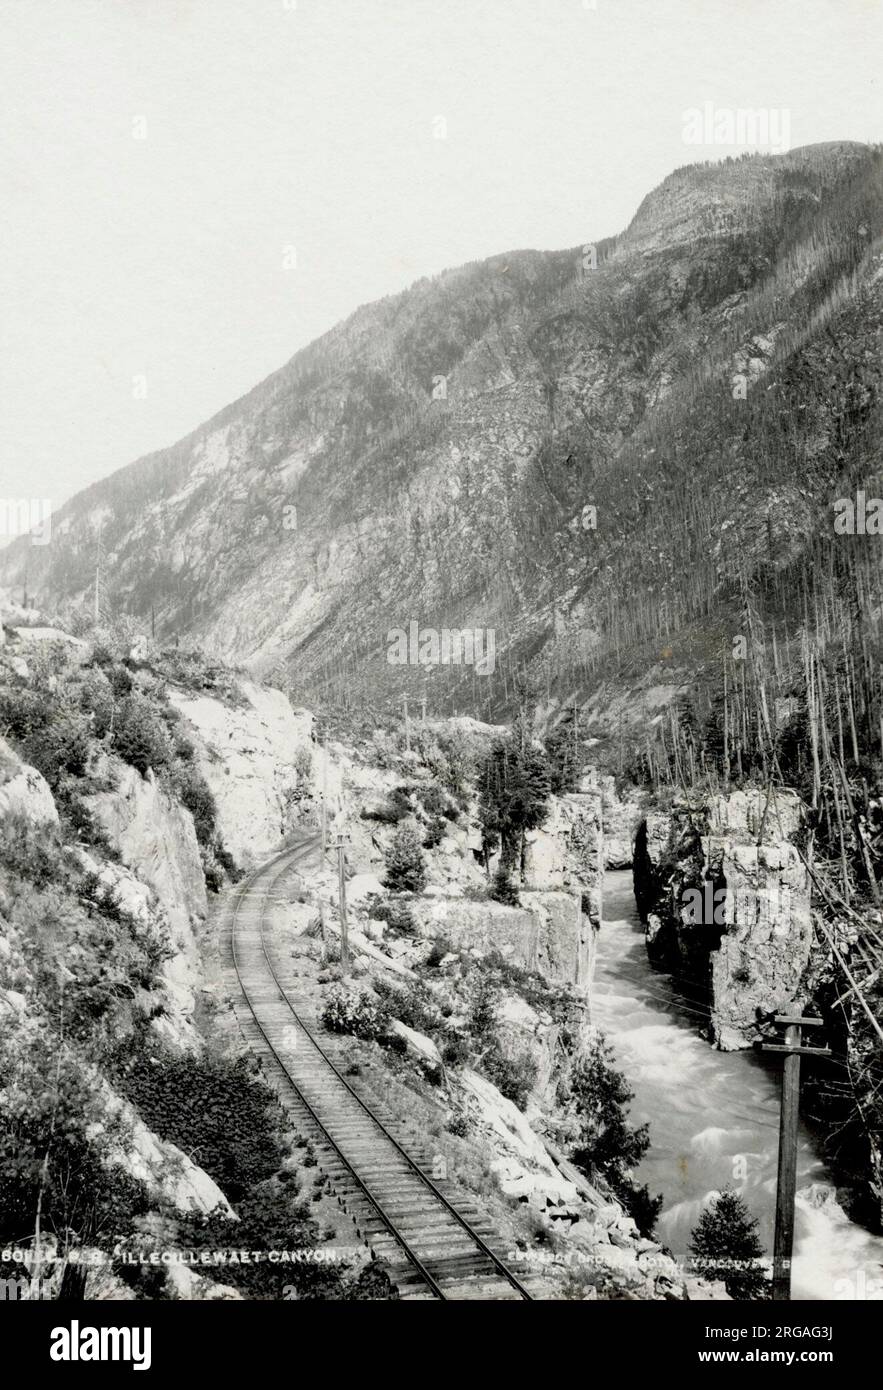 Antiguo siglo 19 fotografía de ferrocarril a lo largo del Cañón Ilecillewaet, río, Columbia Británica, Canadá Foto de stock